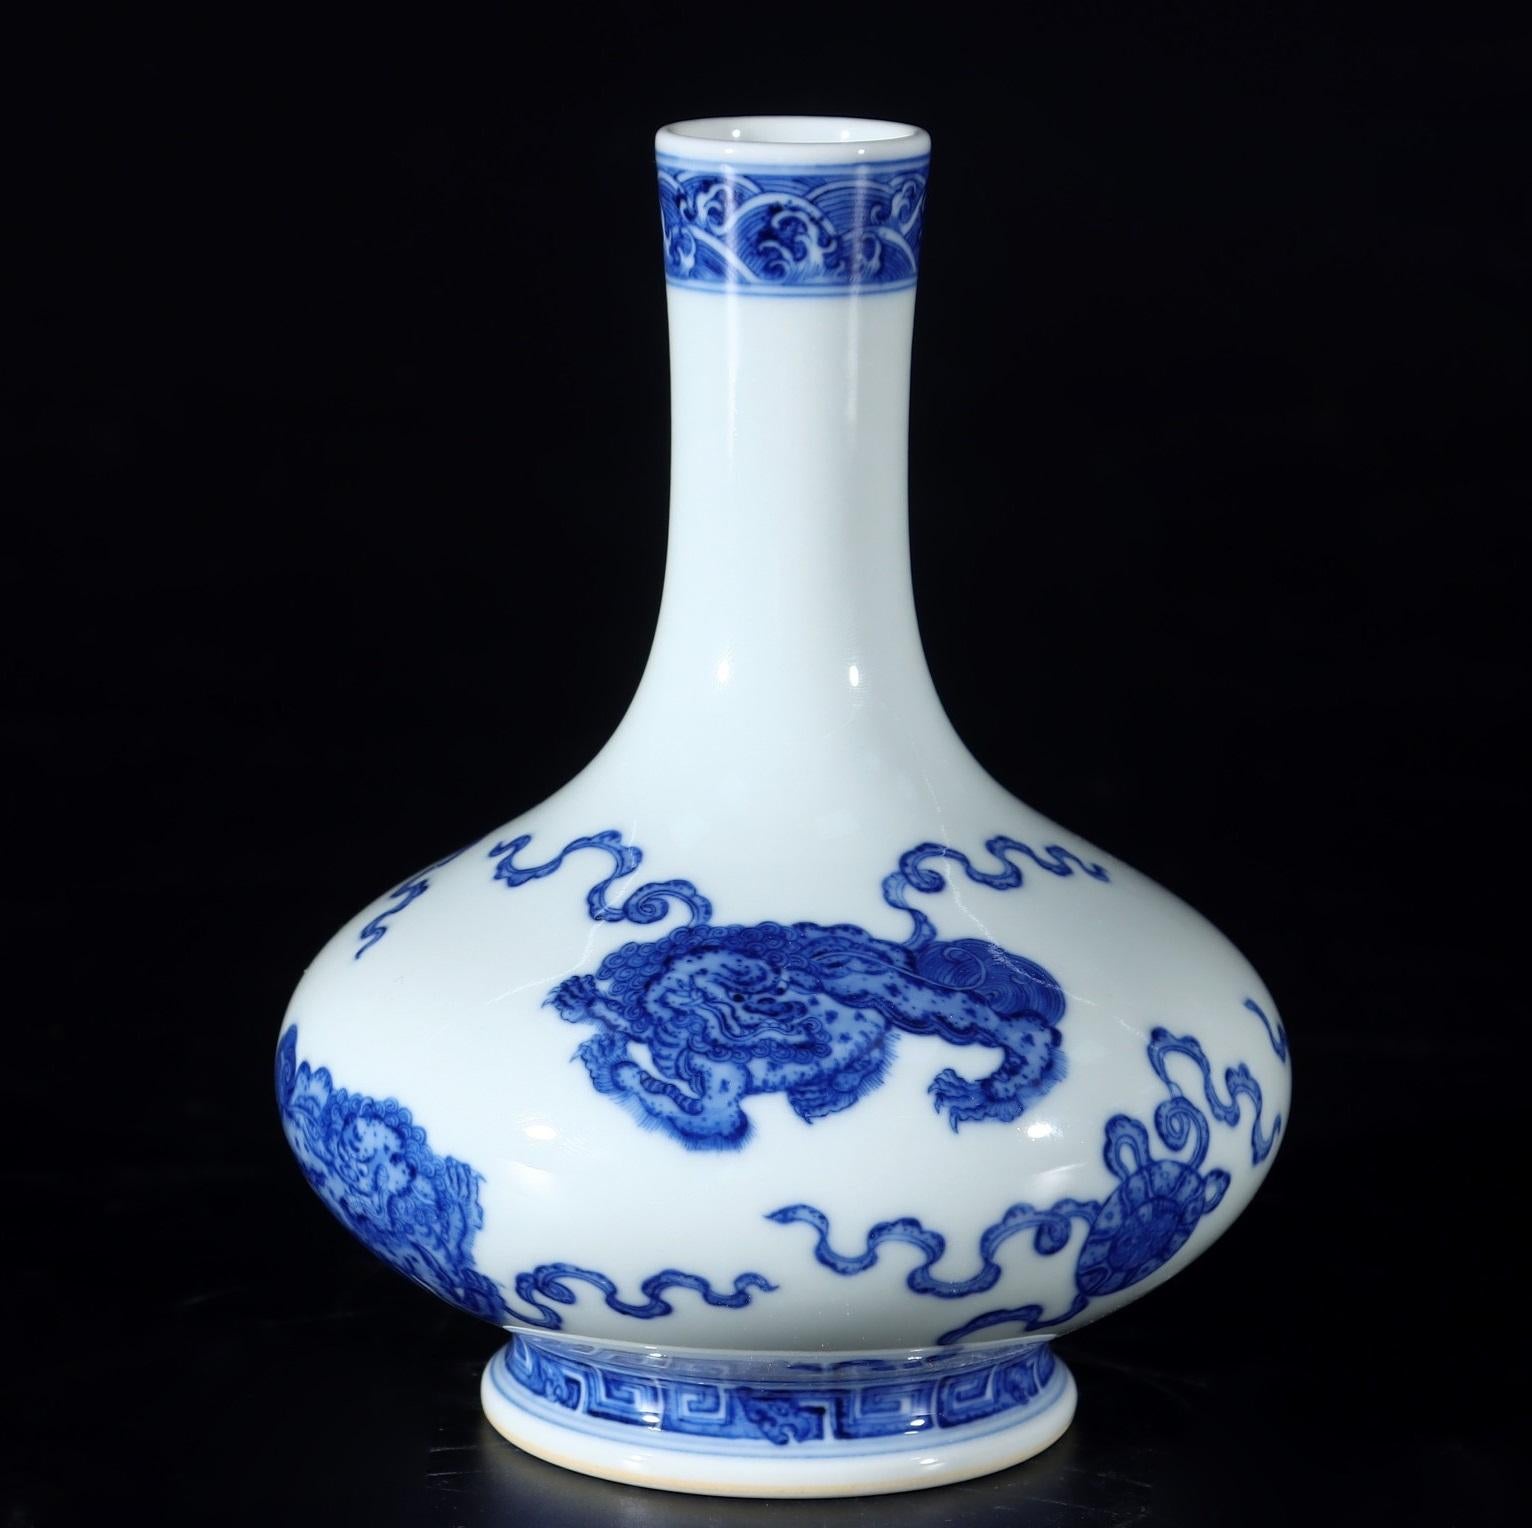 Diese handgefertigte blau-weiße Löwen-Porzellanvase ist ein wirklich einzigartiges und besonderes Sammlerstück aus China. 

In der chinesischen Kultur symbolisiert der Löwe Macht, Schutz und Glückseligkeit. Sie werden oft paarweise als